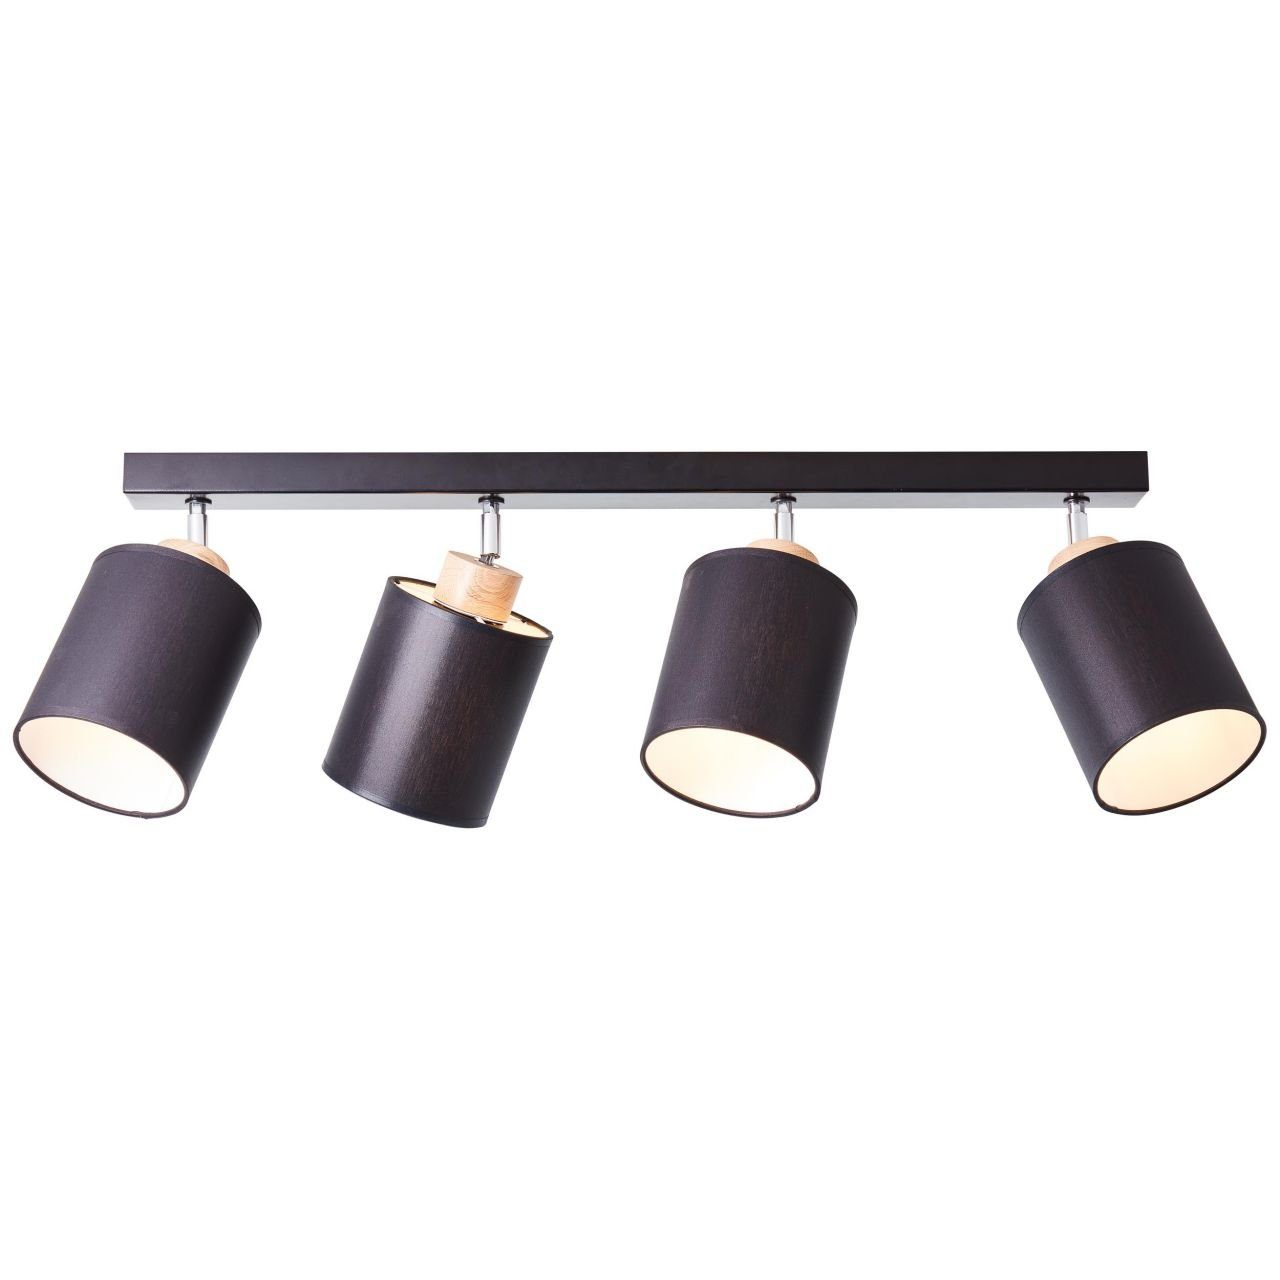 Discounter Brilliant Deckenleuchte Metall/Holz/Textil Spotbalken Lampe, 4flg Vonnie Vonnie, schwarz/holzfarbend